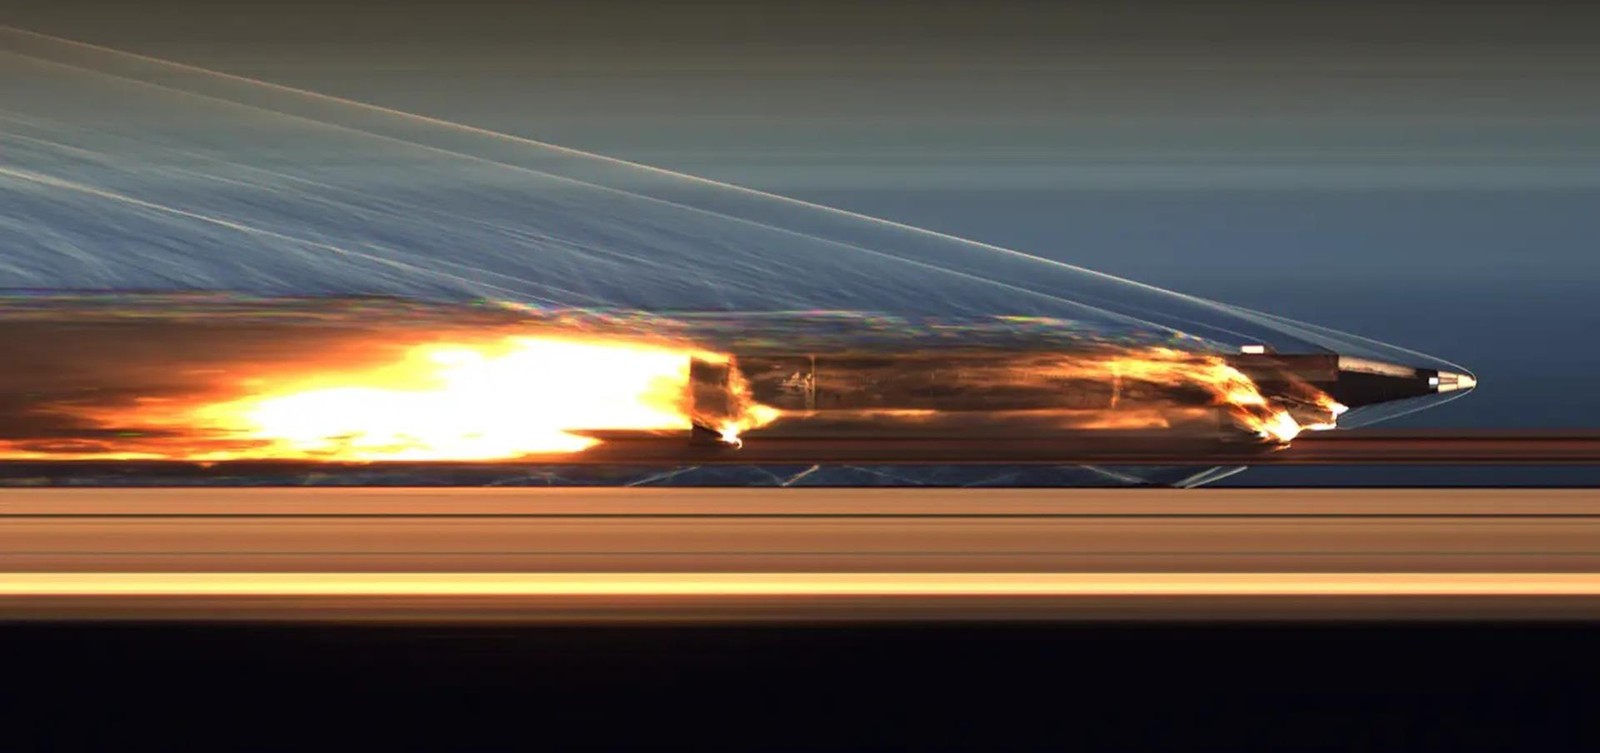 odzyskano sanie rakietowe z tak wysoką prędkością, rozwoju broni hipersonicznej